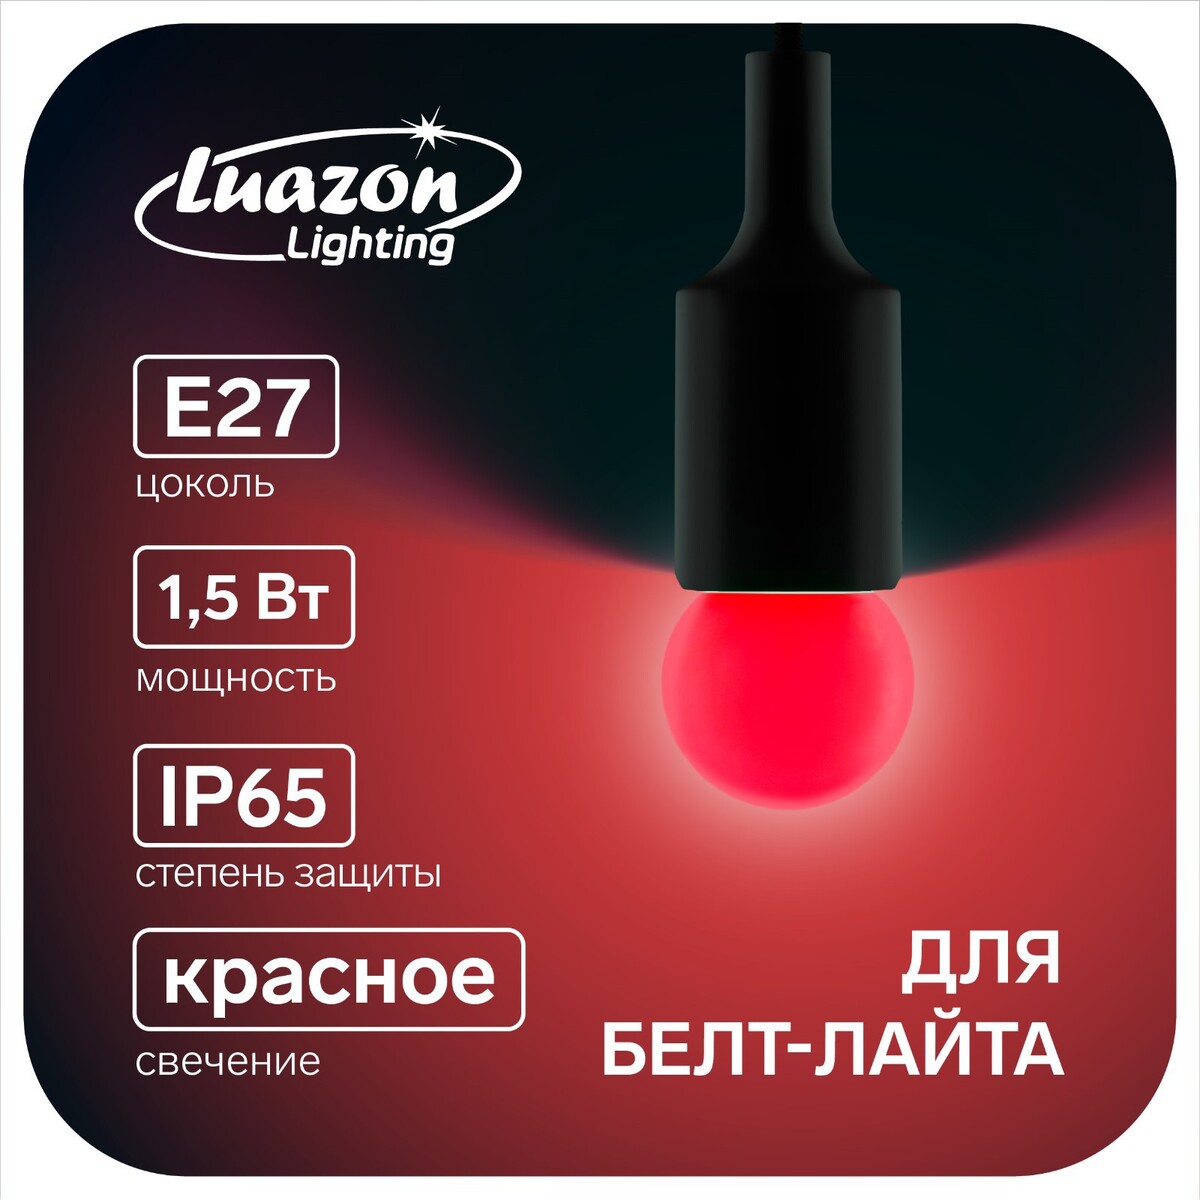 Лампа светодиодная luazon lighting, g45, е27, 1.5 вт, для белт-лайта, красная, наб 20 шт лампа светодиодная vople optima t8 g13 24 вт 4000 к 1920 лм 1513 мм матовая